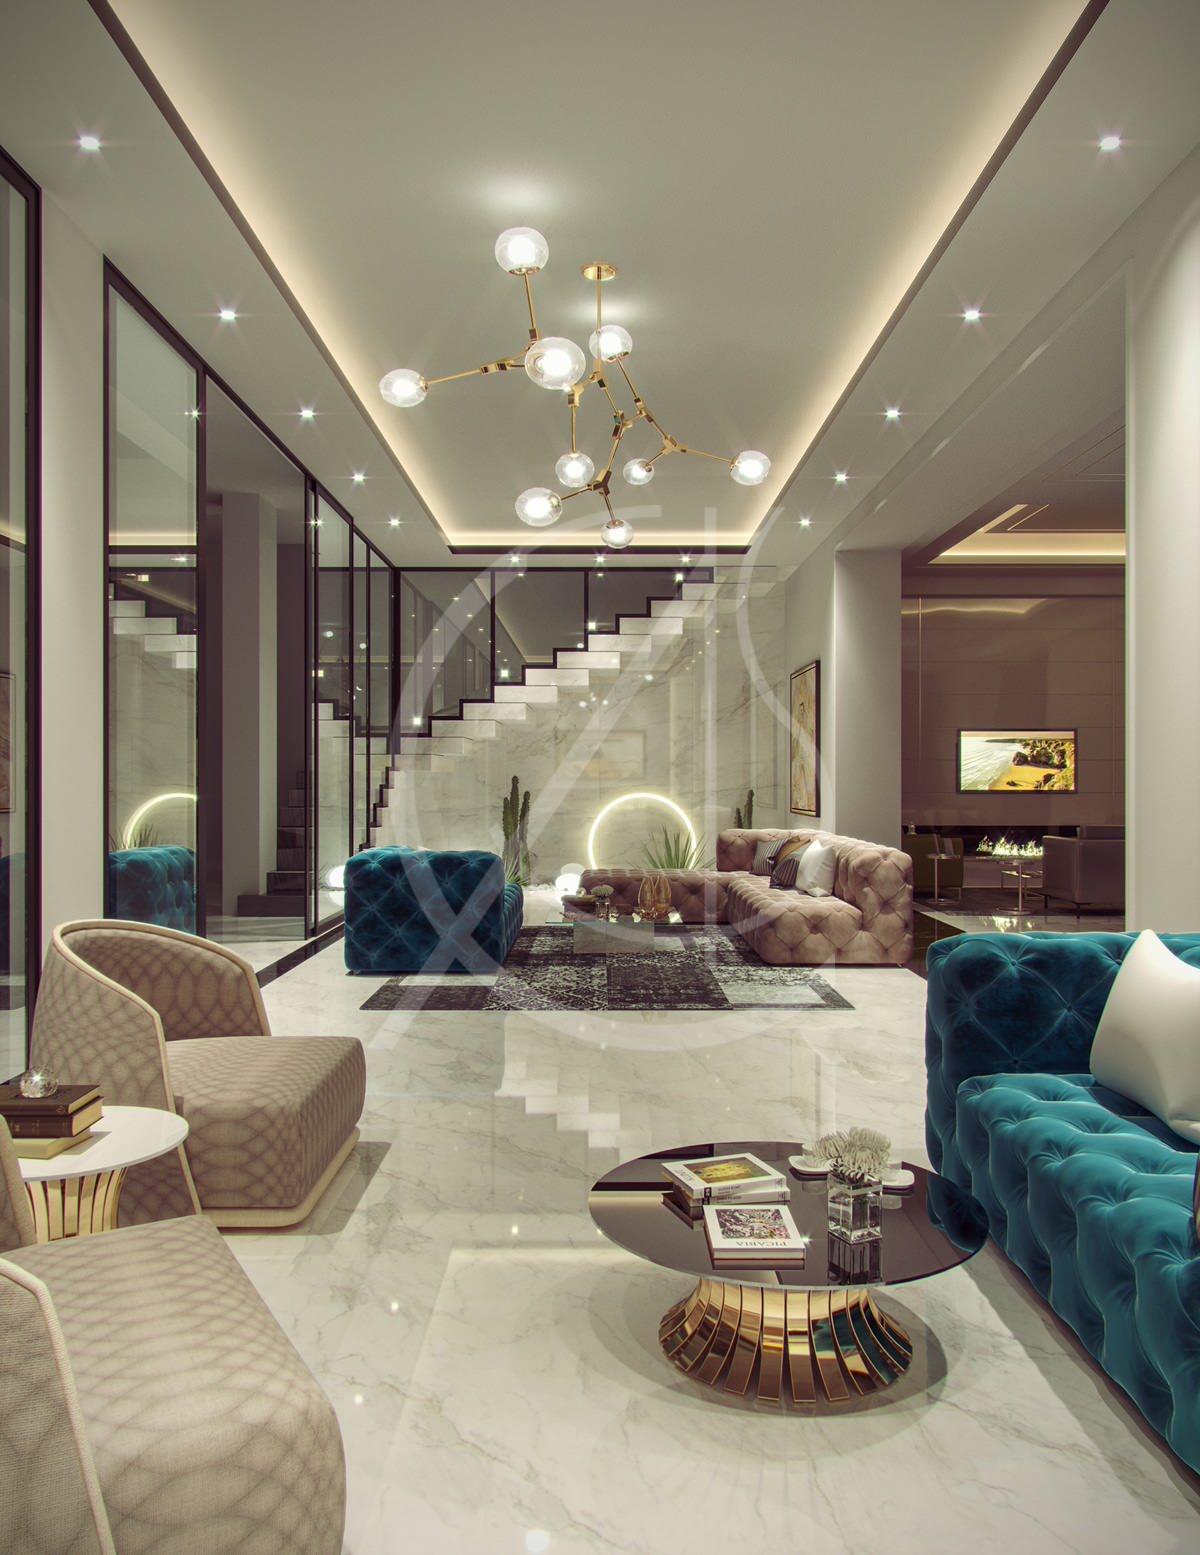 Family Villa Contemporary Arabic Interior Design Comelite Architecture And Structure Img~33a1ff100b8cf64f 16 4974 1 964429c 